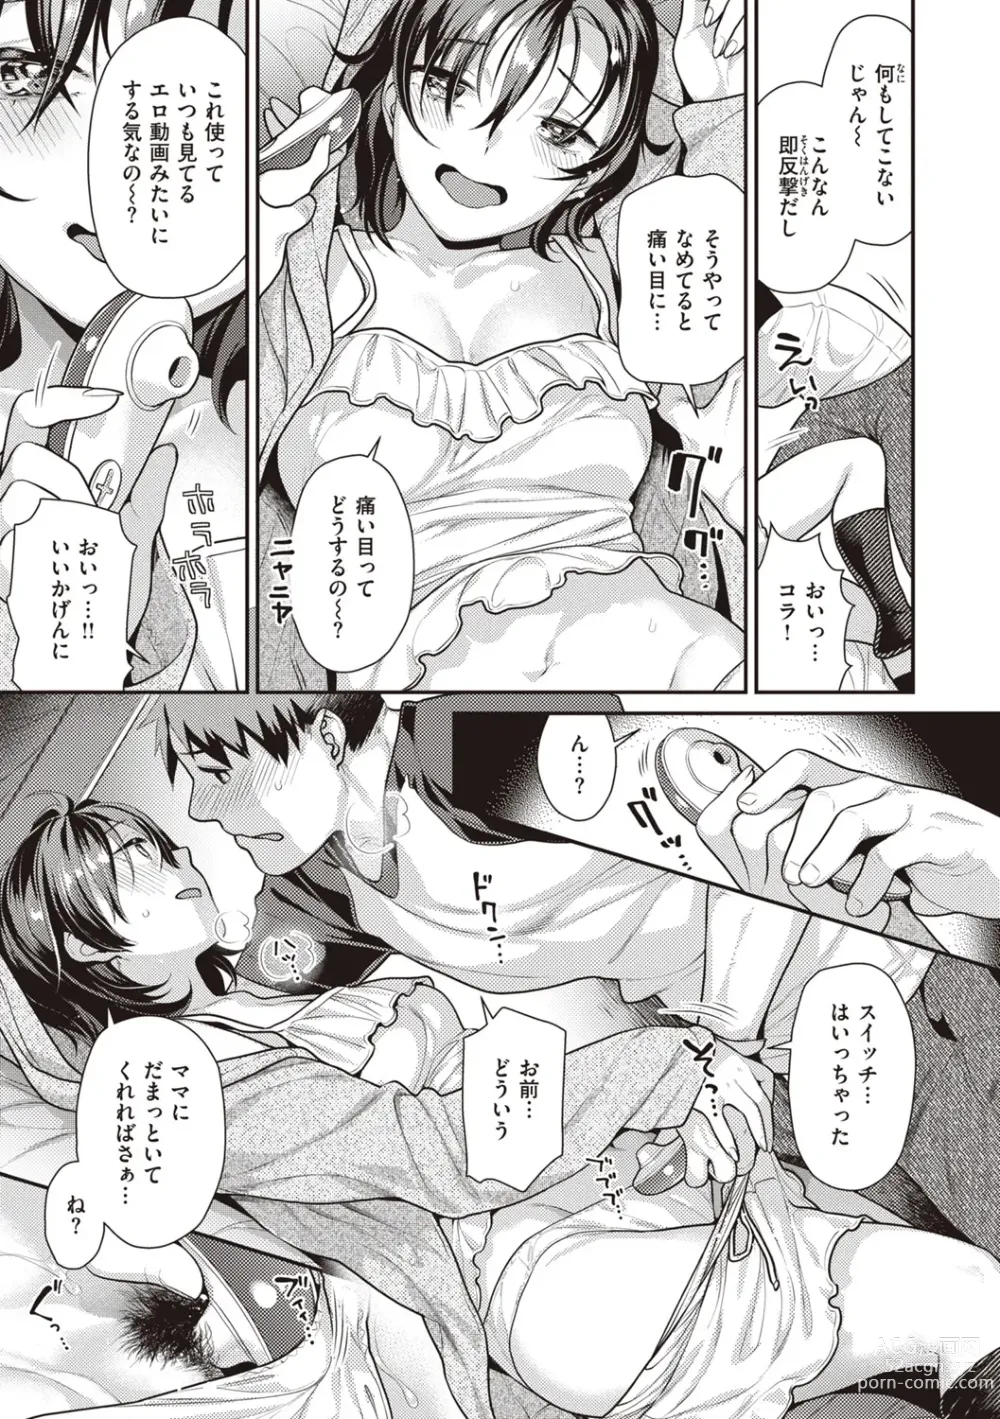 Page 9 of manga Totsumachi Nyanko